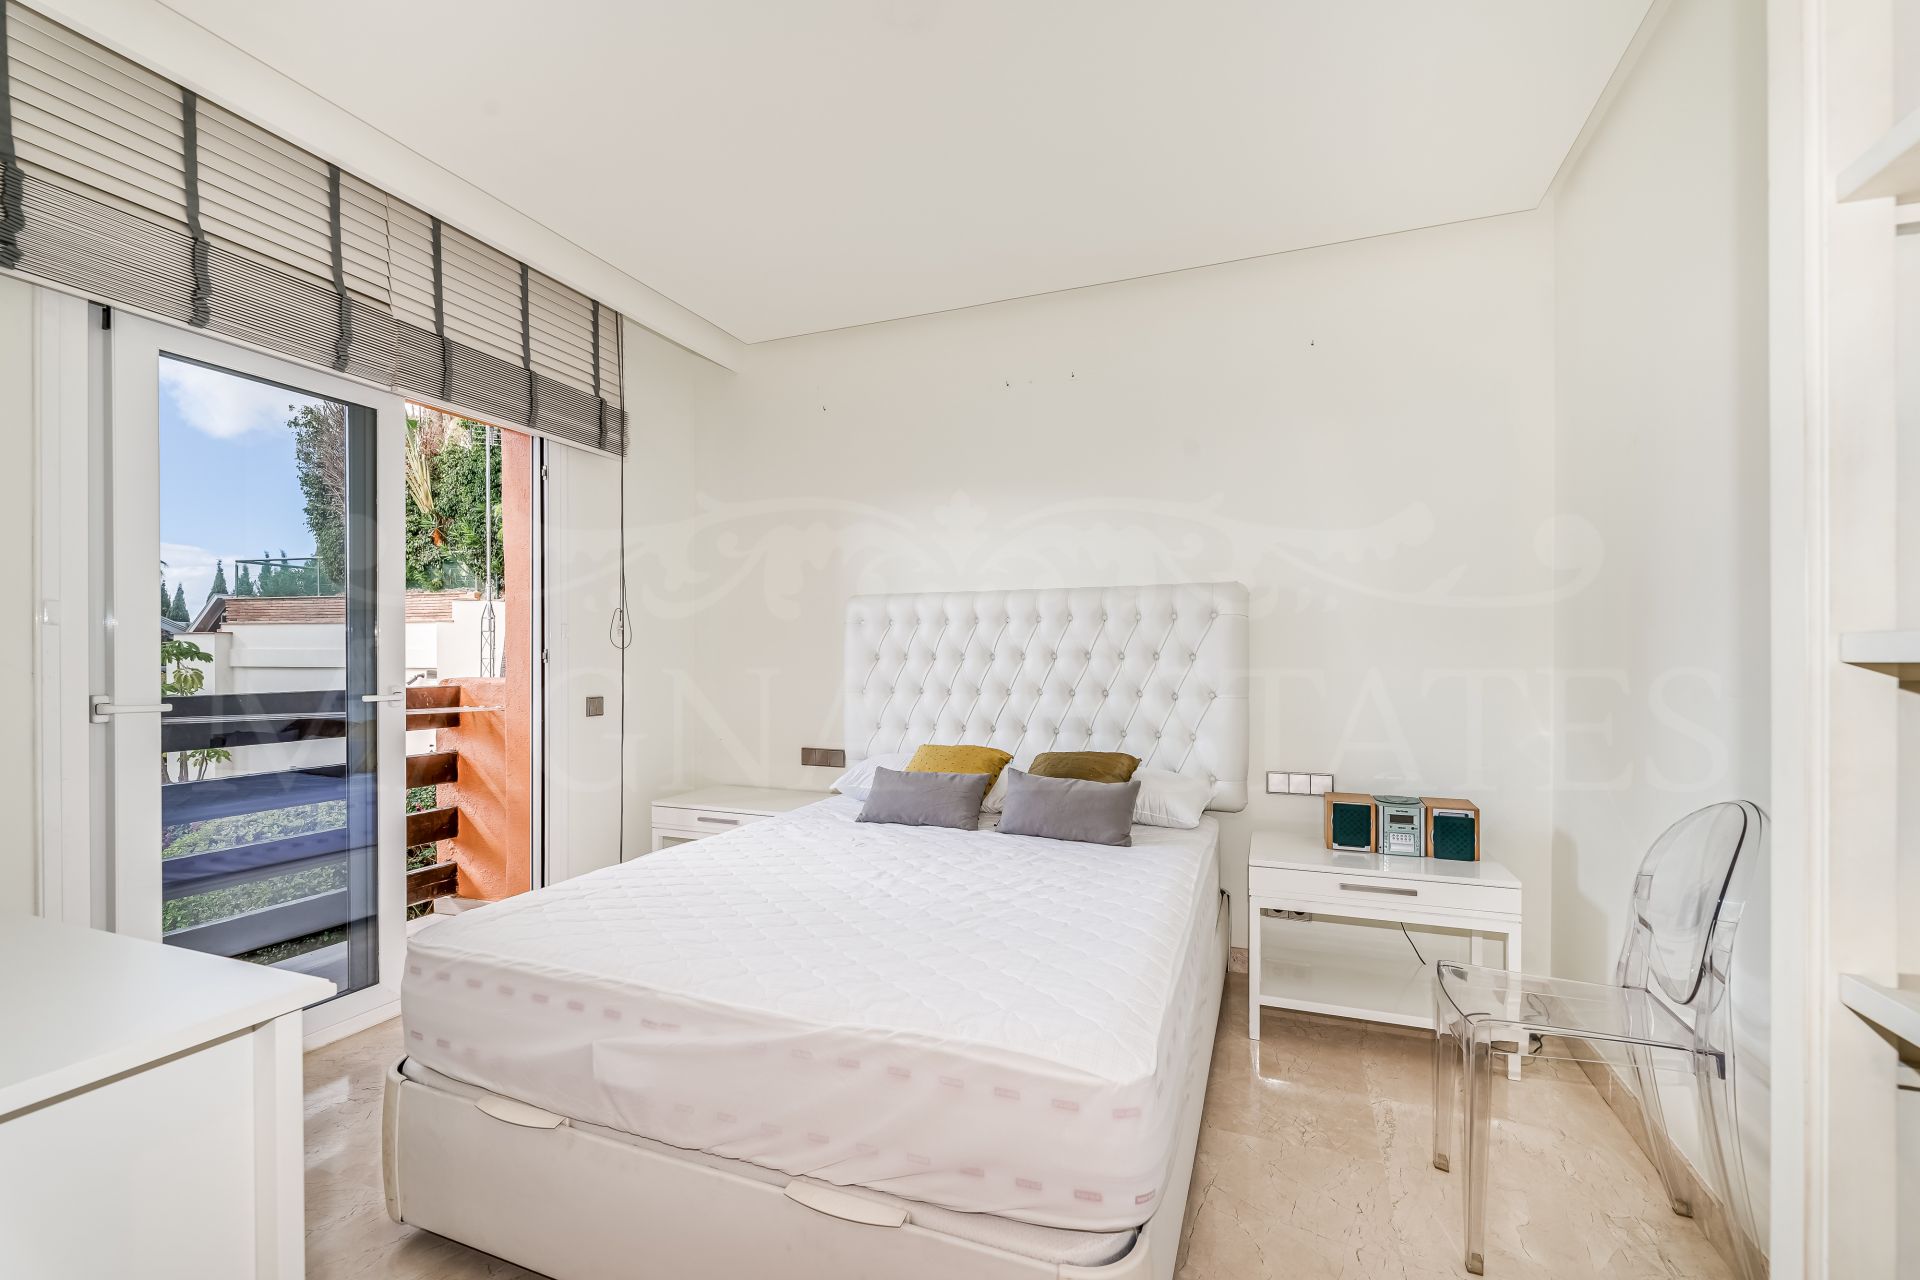 Apartamento doble de 6 dormitorios en el corazón de Sierra Blanca, Marbella